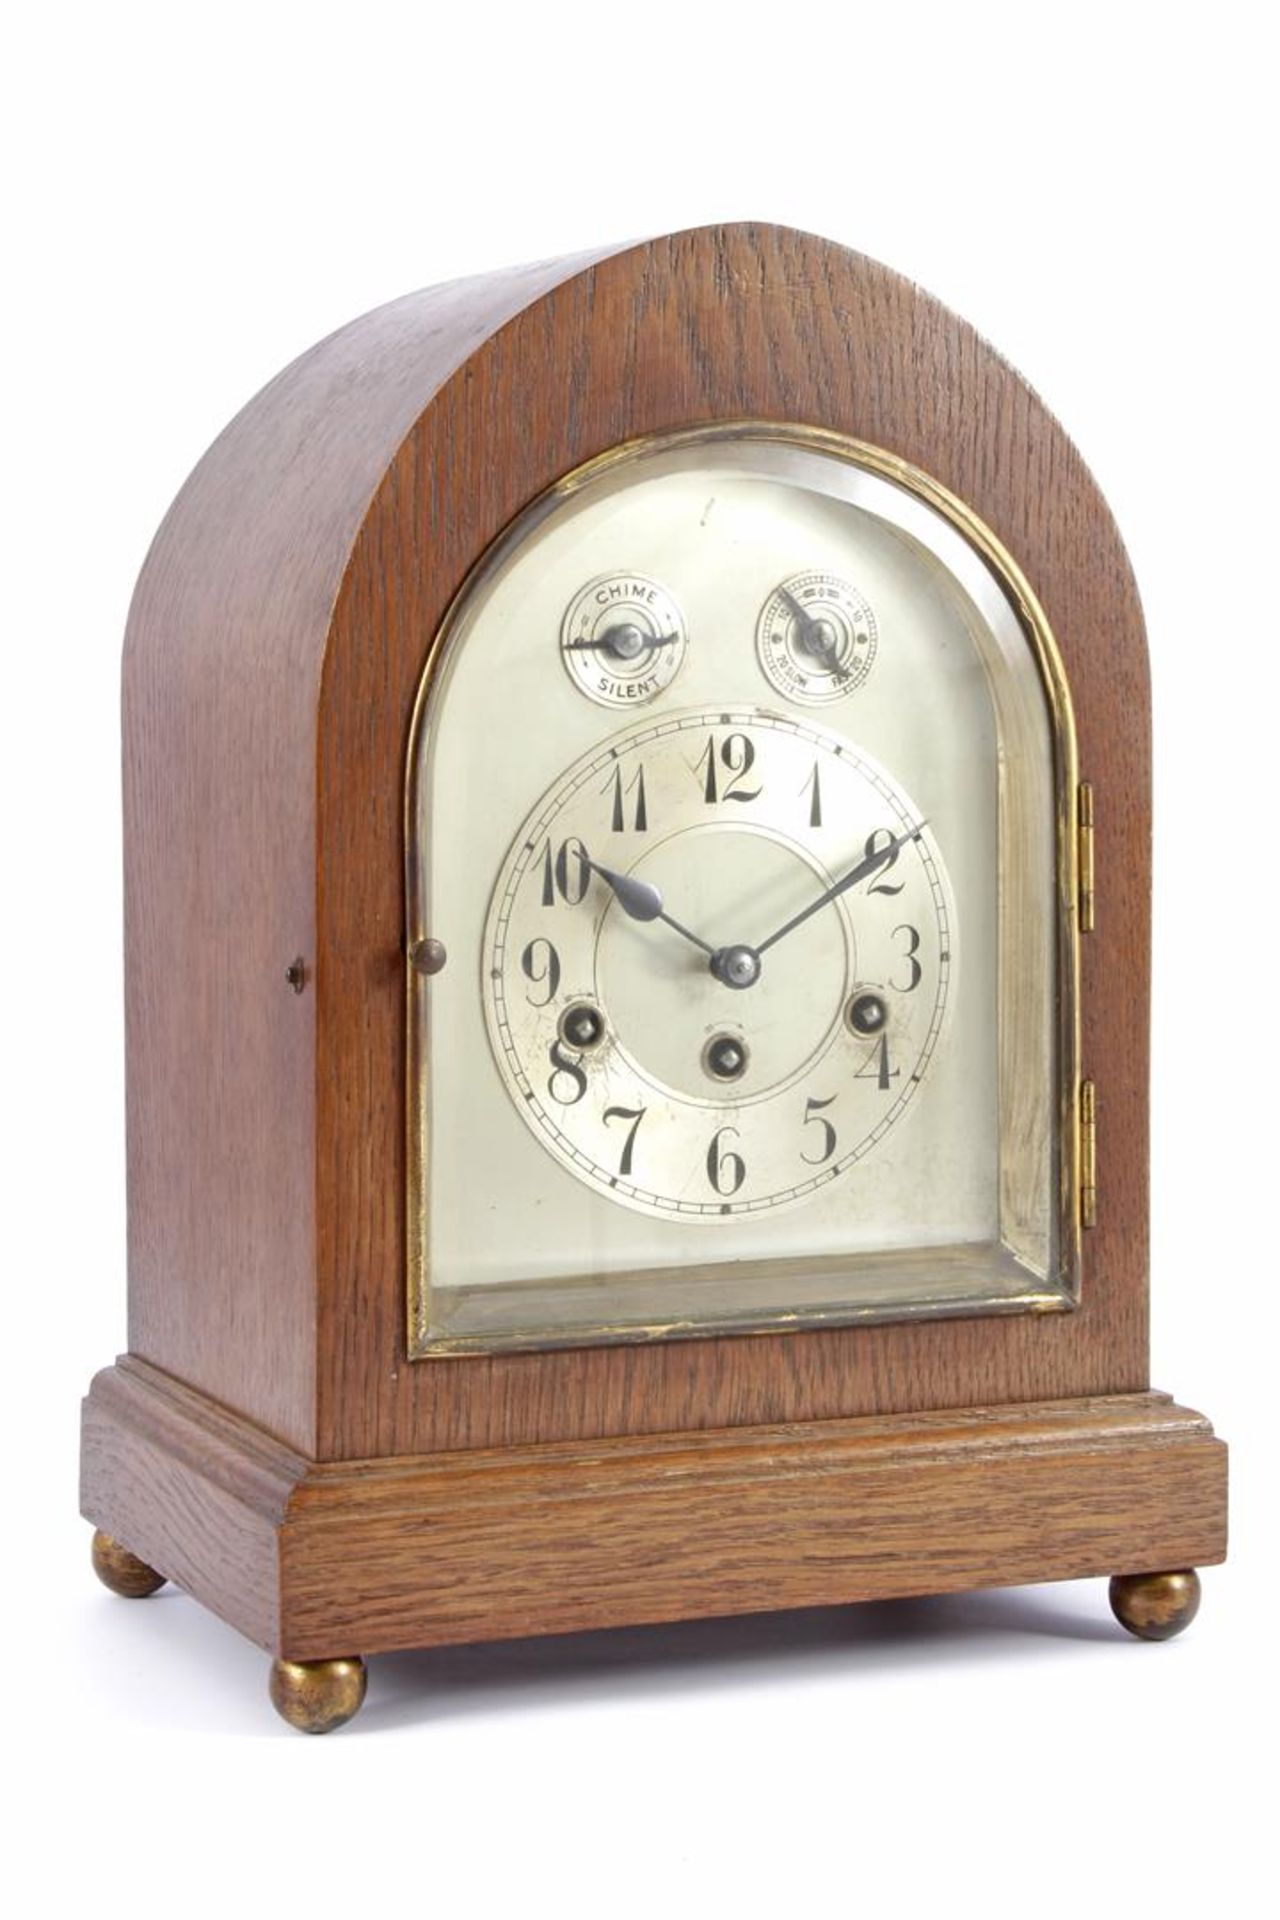 Table clock in oak cabinet, 37 cm high